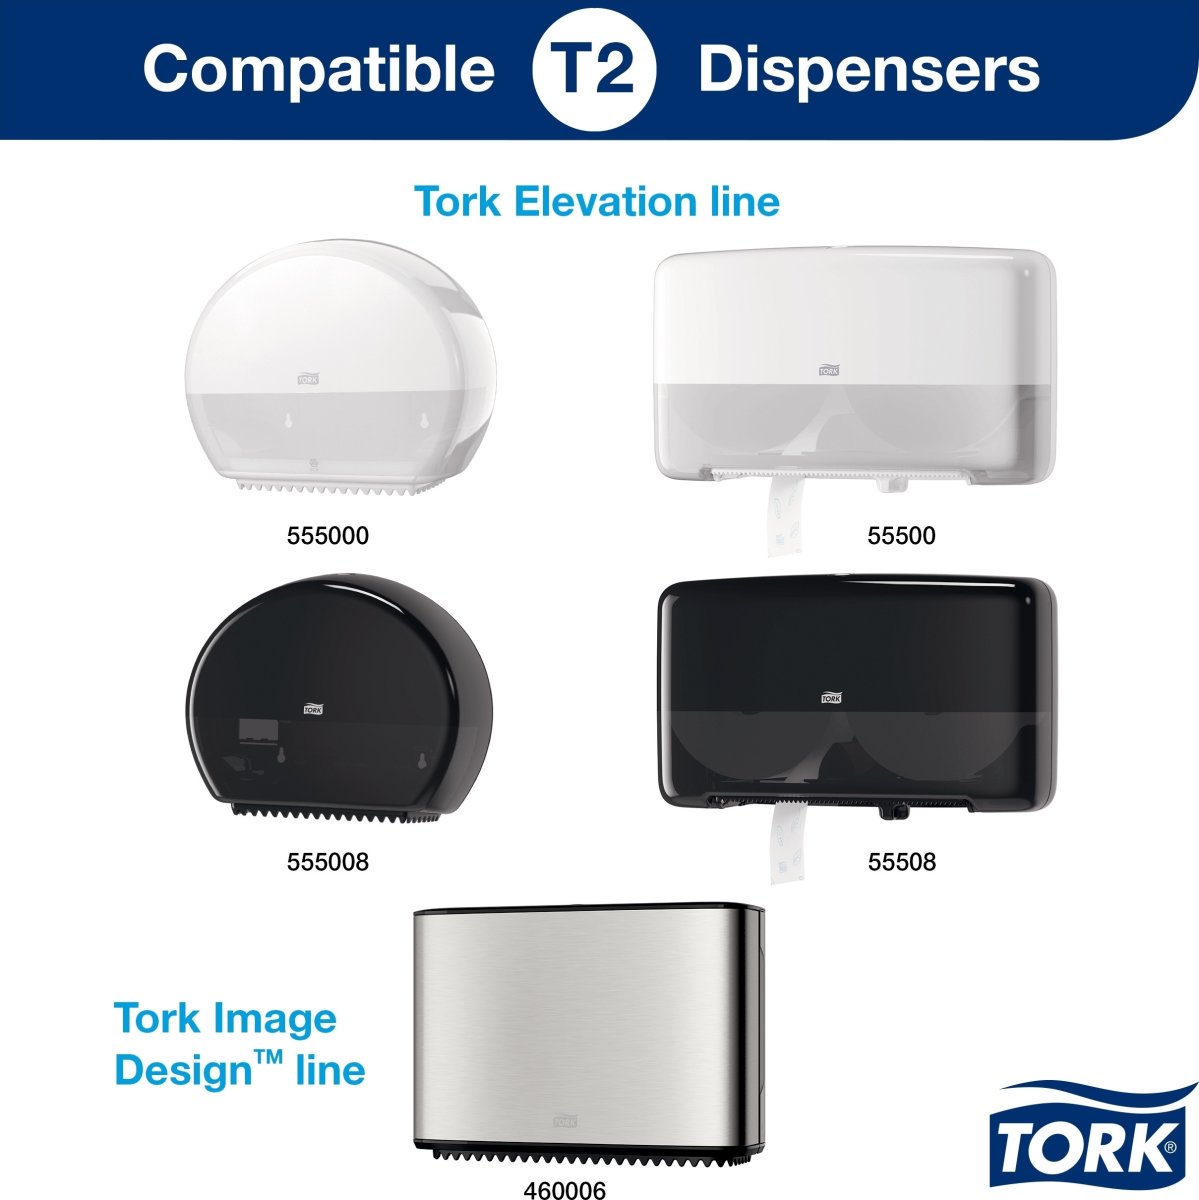 Tork T2 Advanced Jumbo Toiletpapir | 2-lag